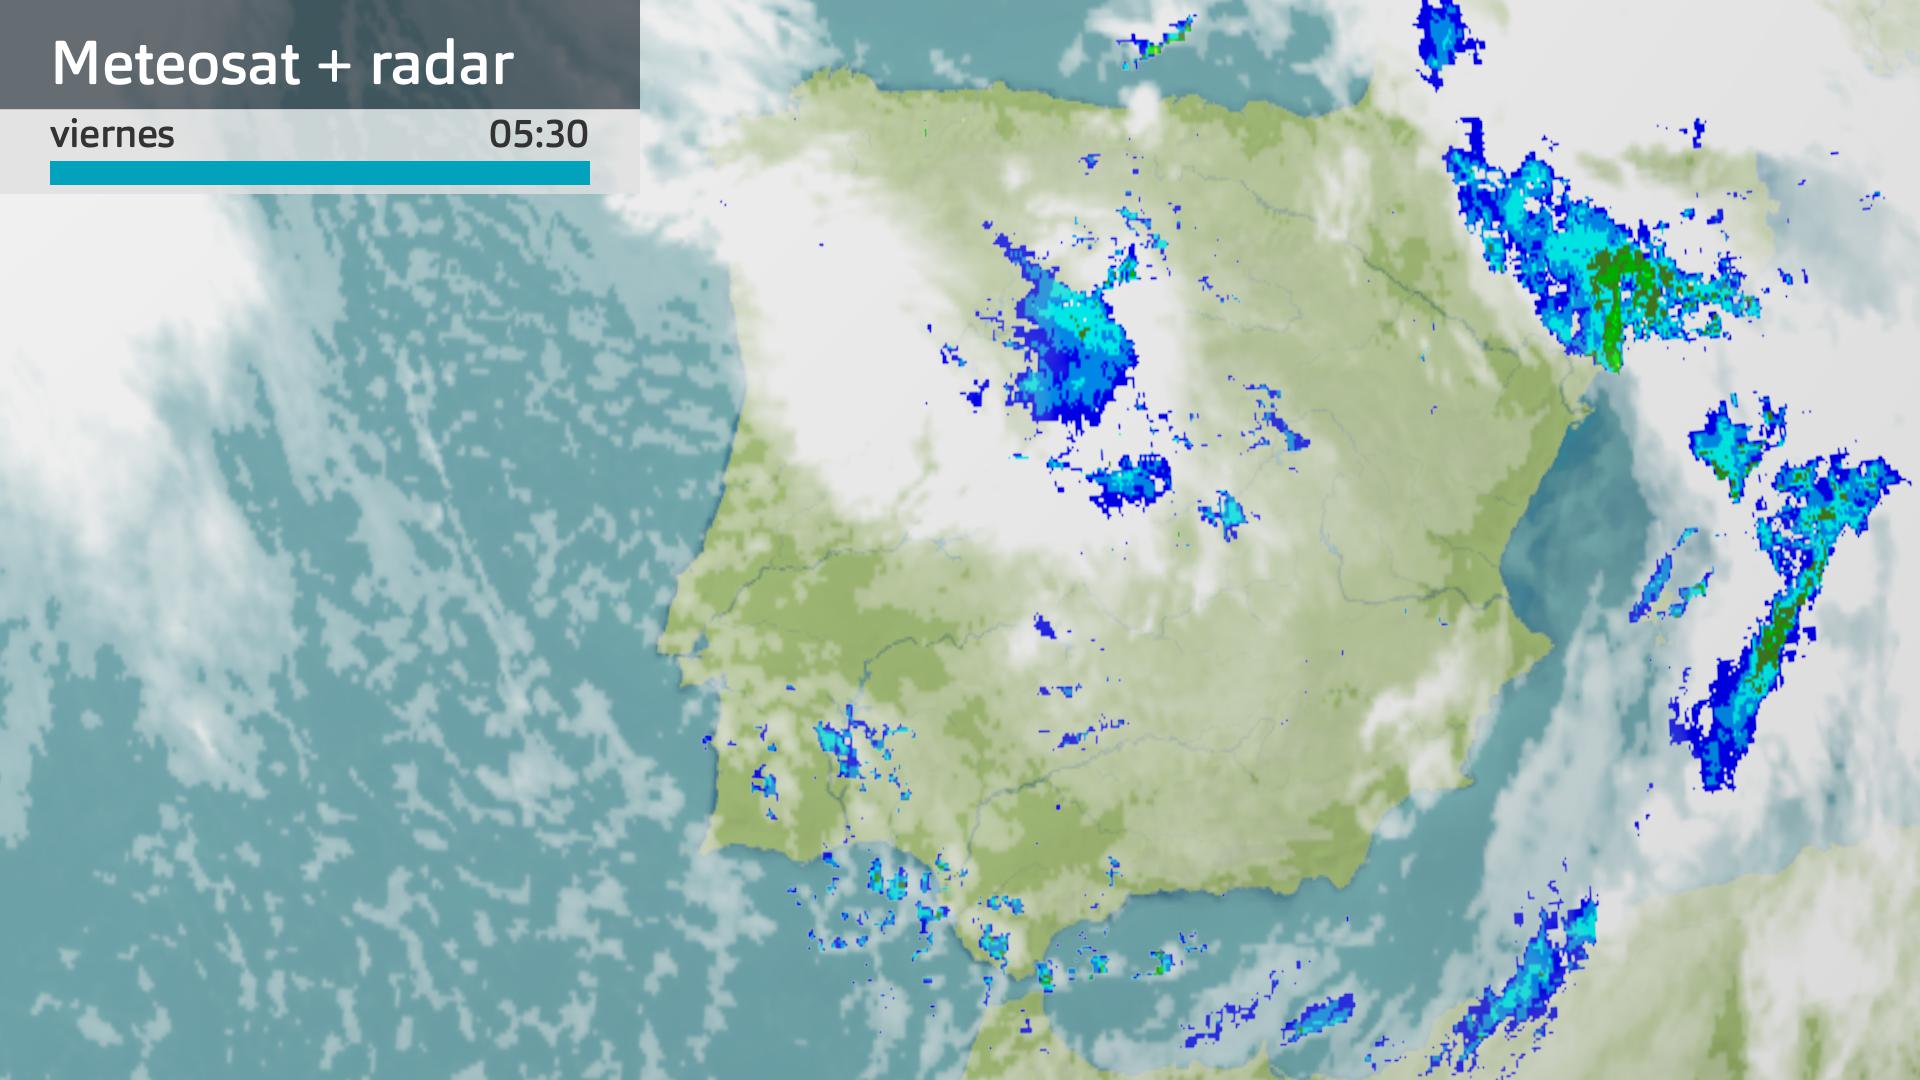 Imagen del Meteosat + radar meteorológico viernes 8 de marzo 5:30 h.